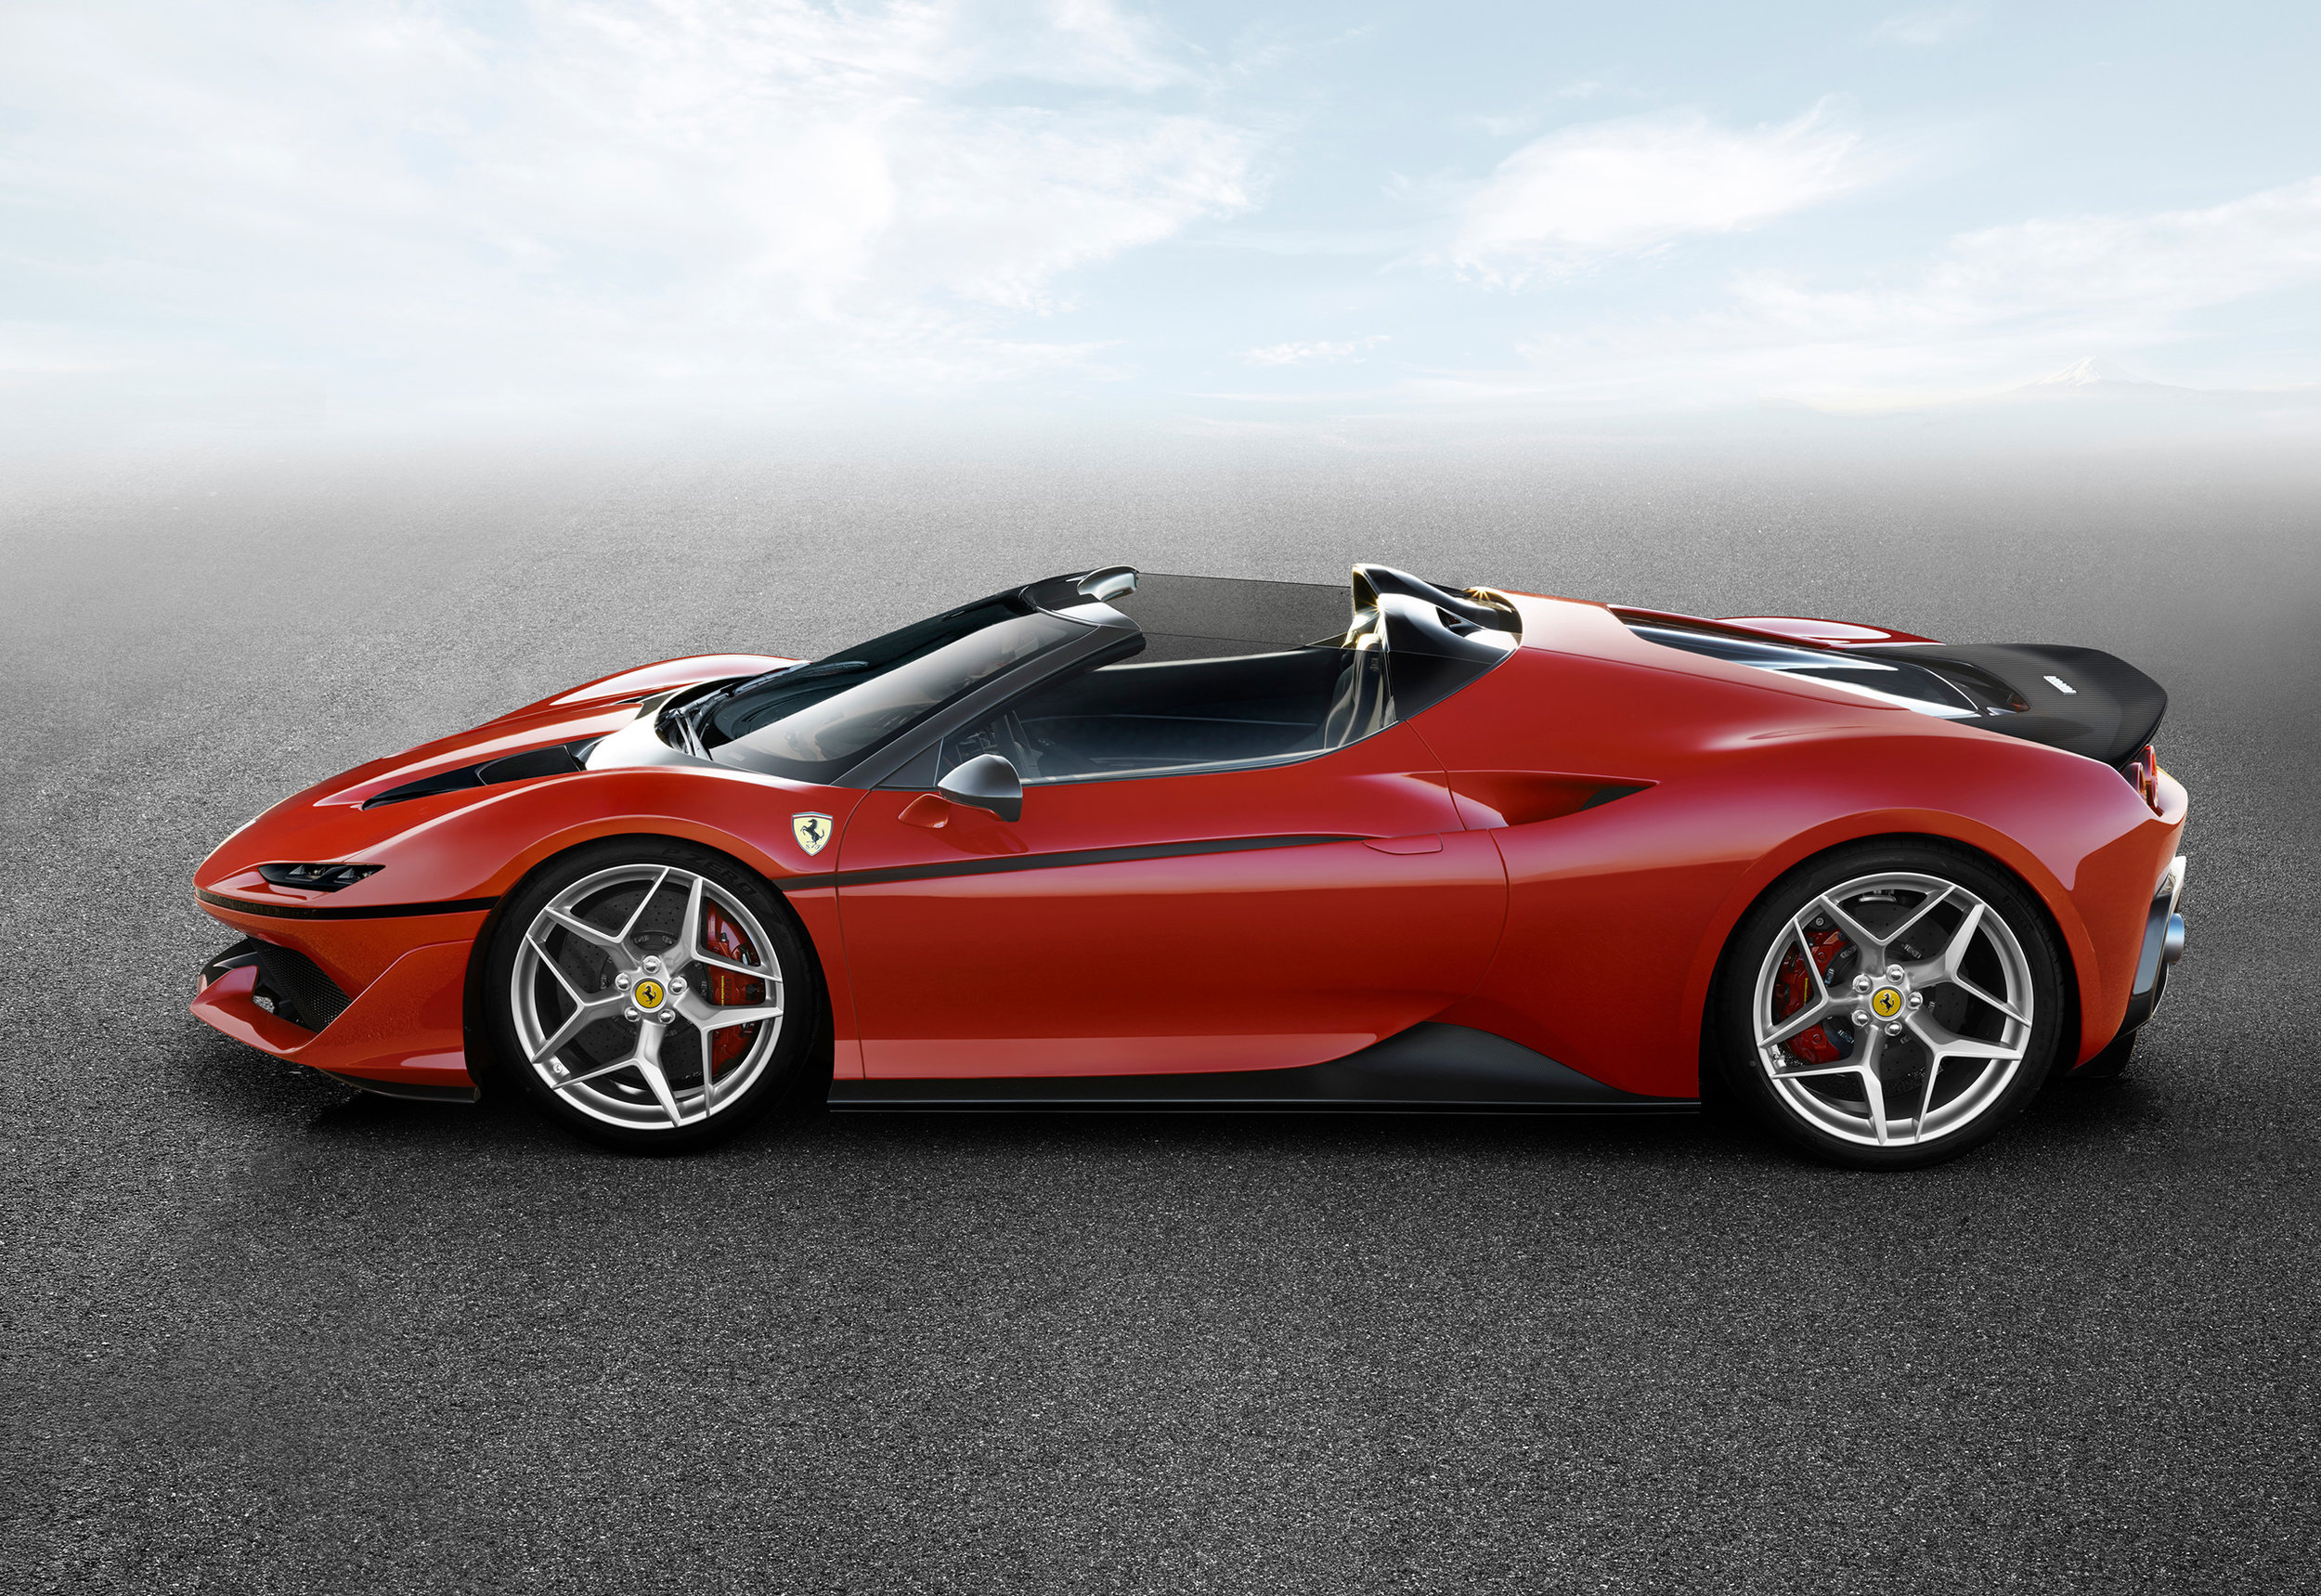 Ferrari_J50_side.jpg